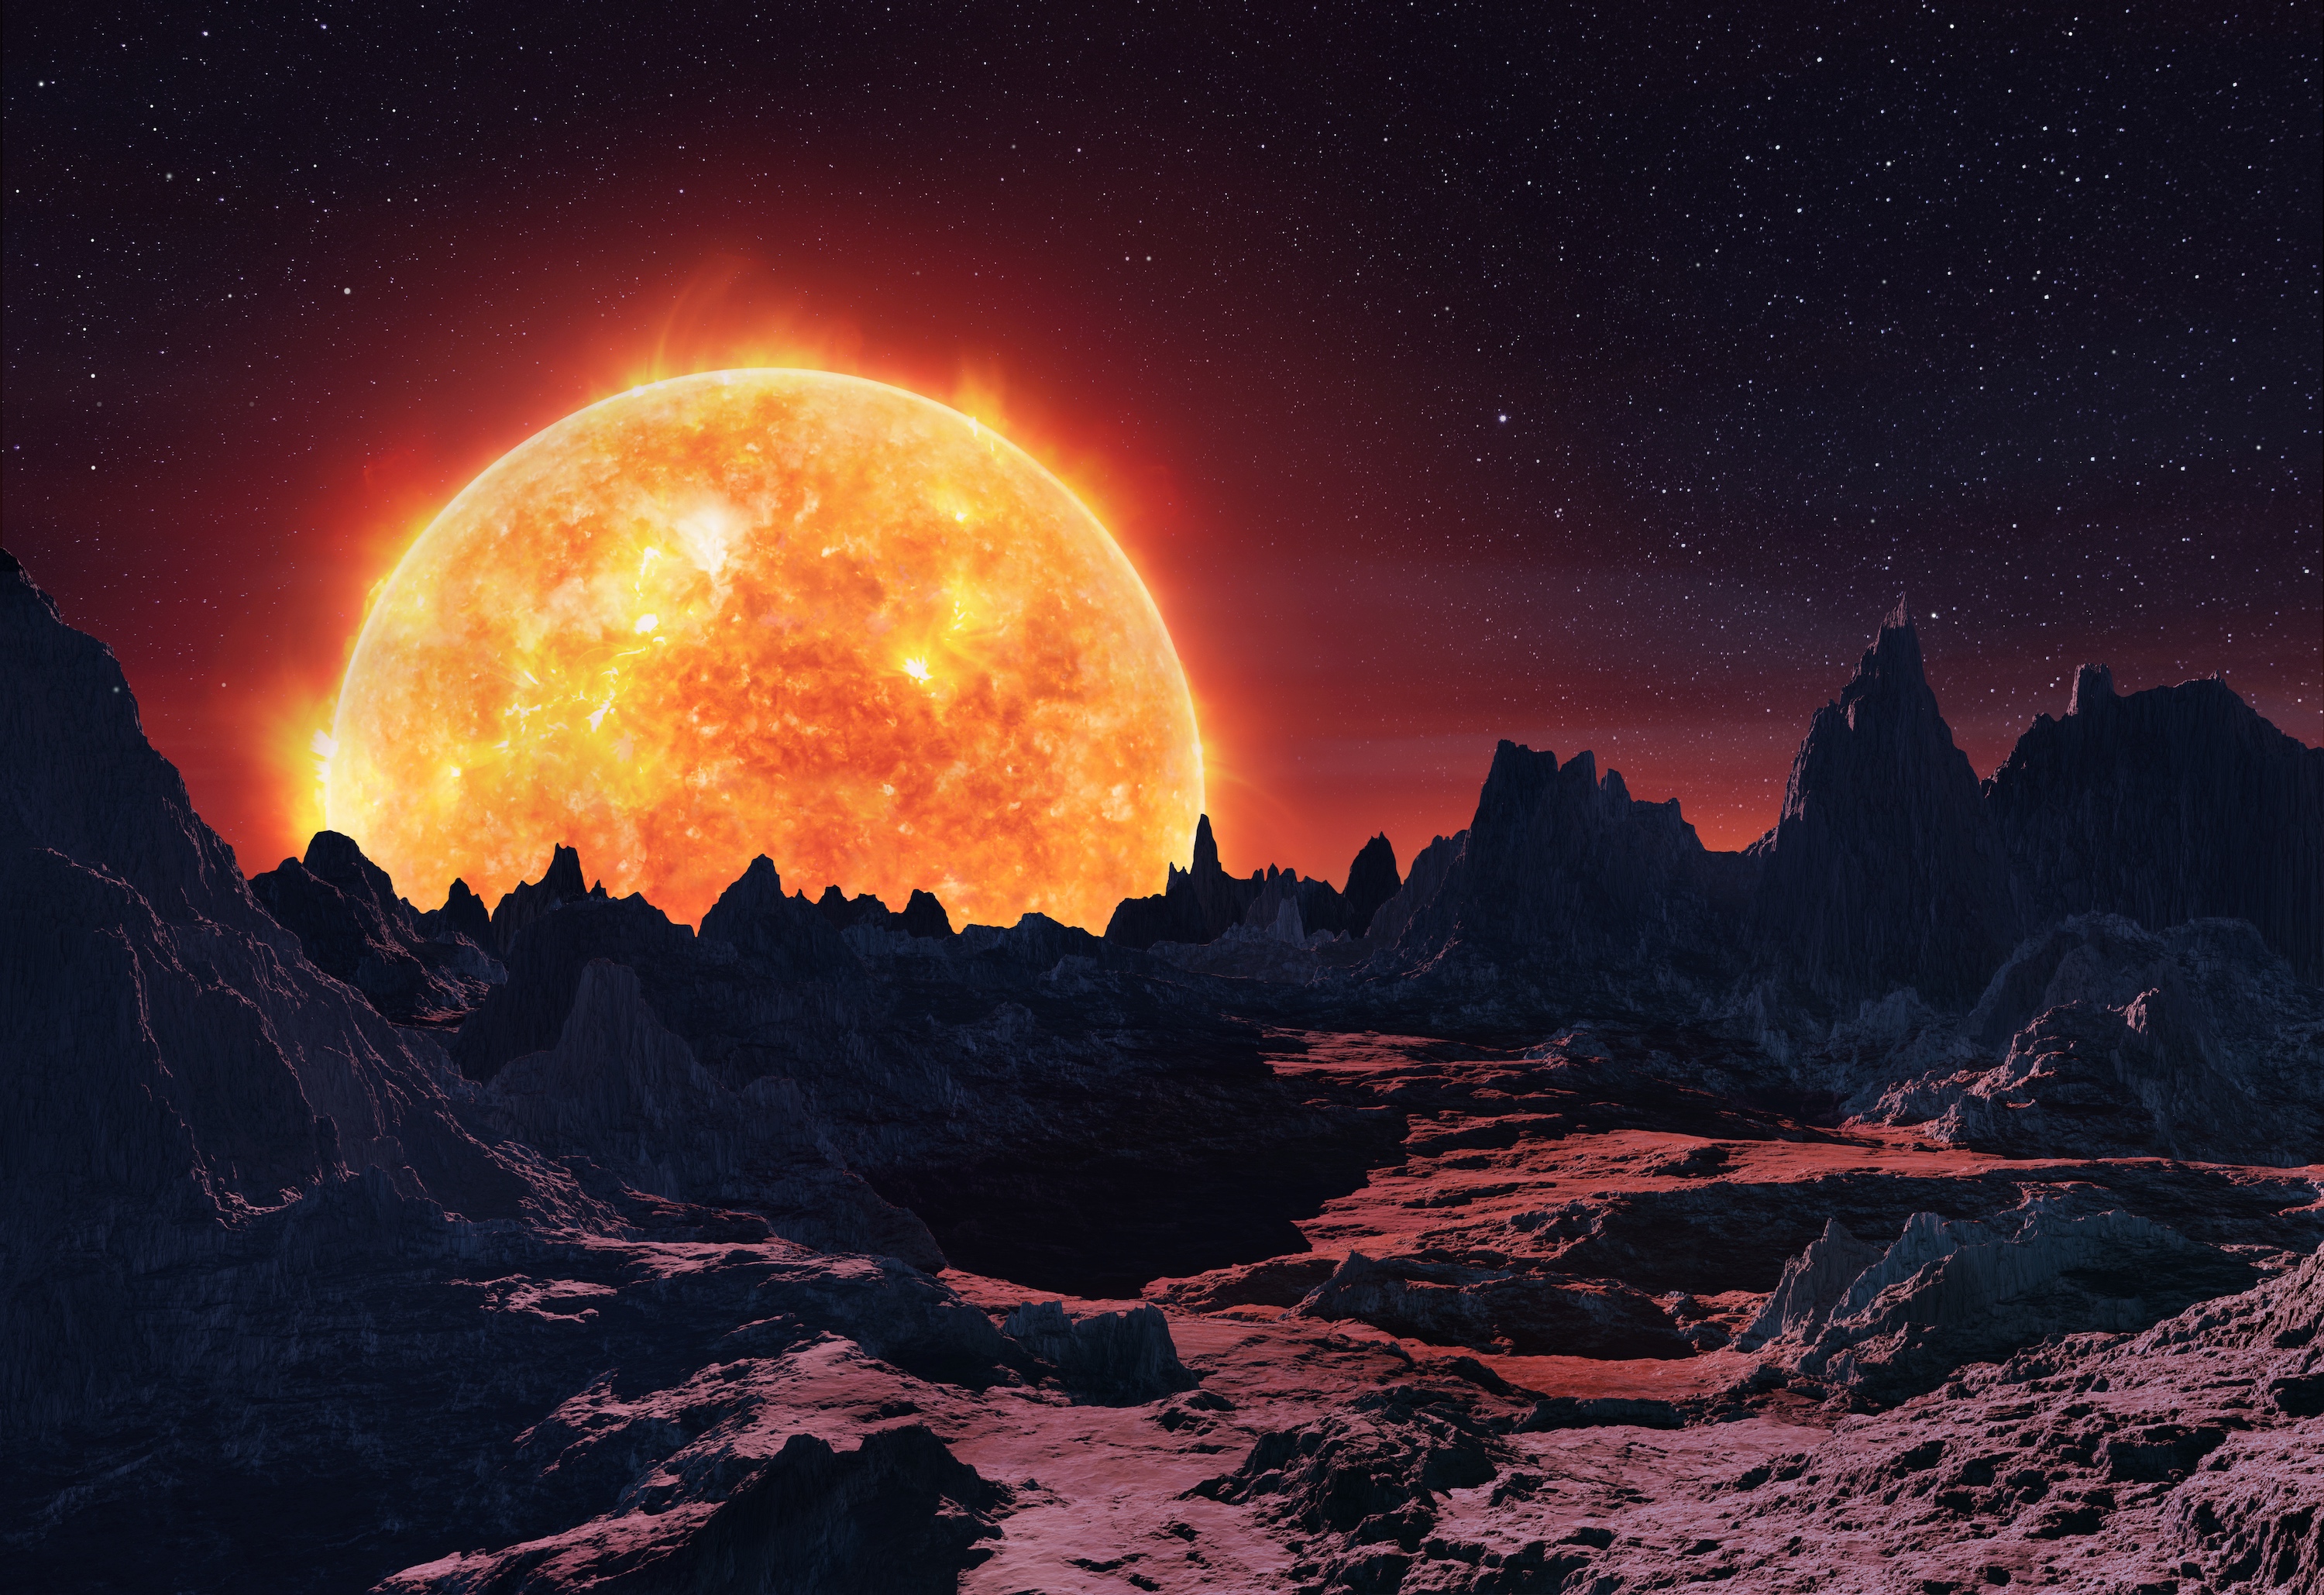 Illustration du lever d'une géante rouge au-dessus d'une planète rocheuse. © Pavel, Adobe Stock